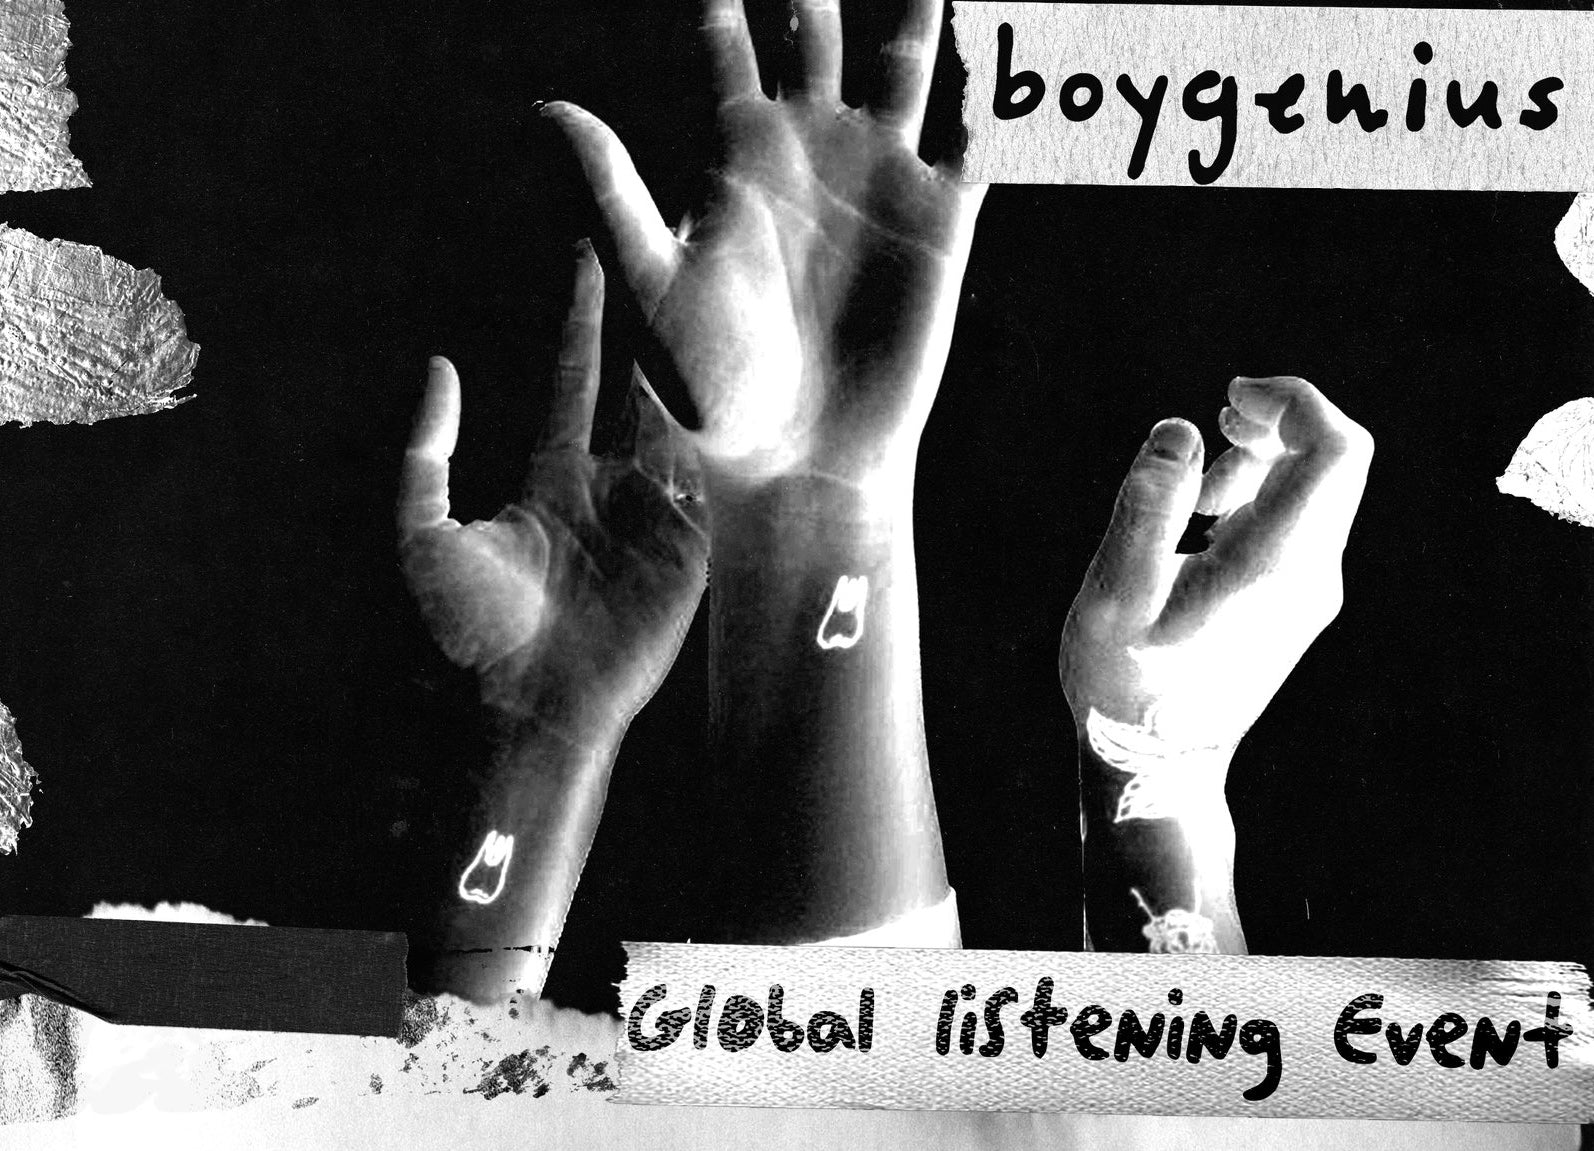 First Listen | boygenius